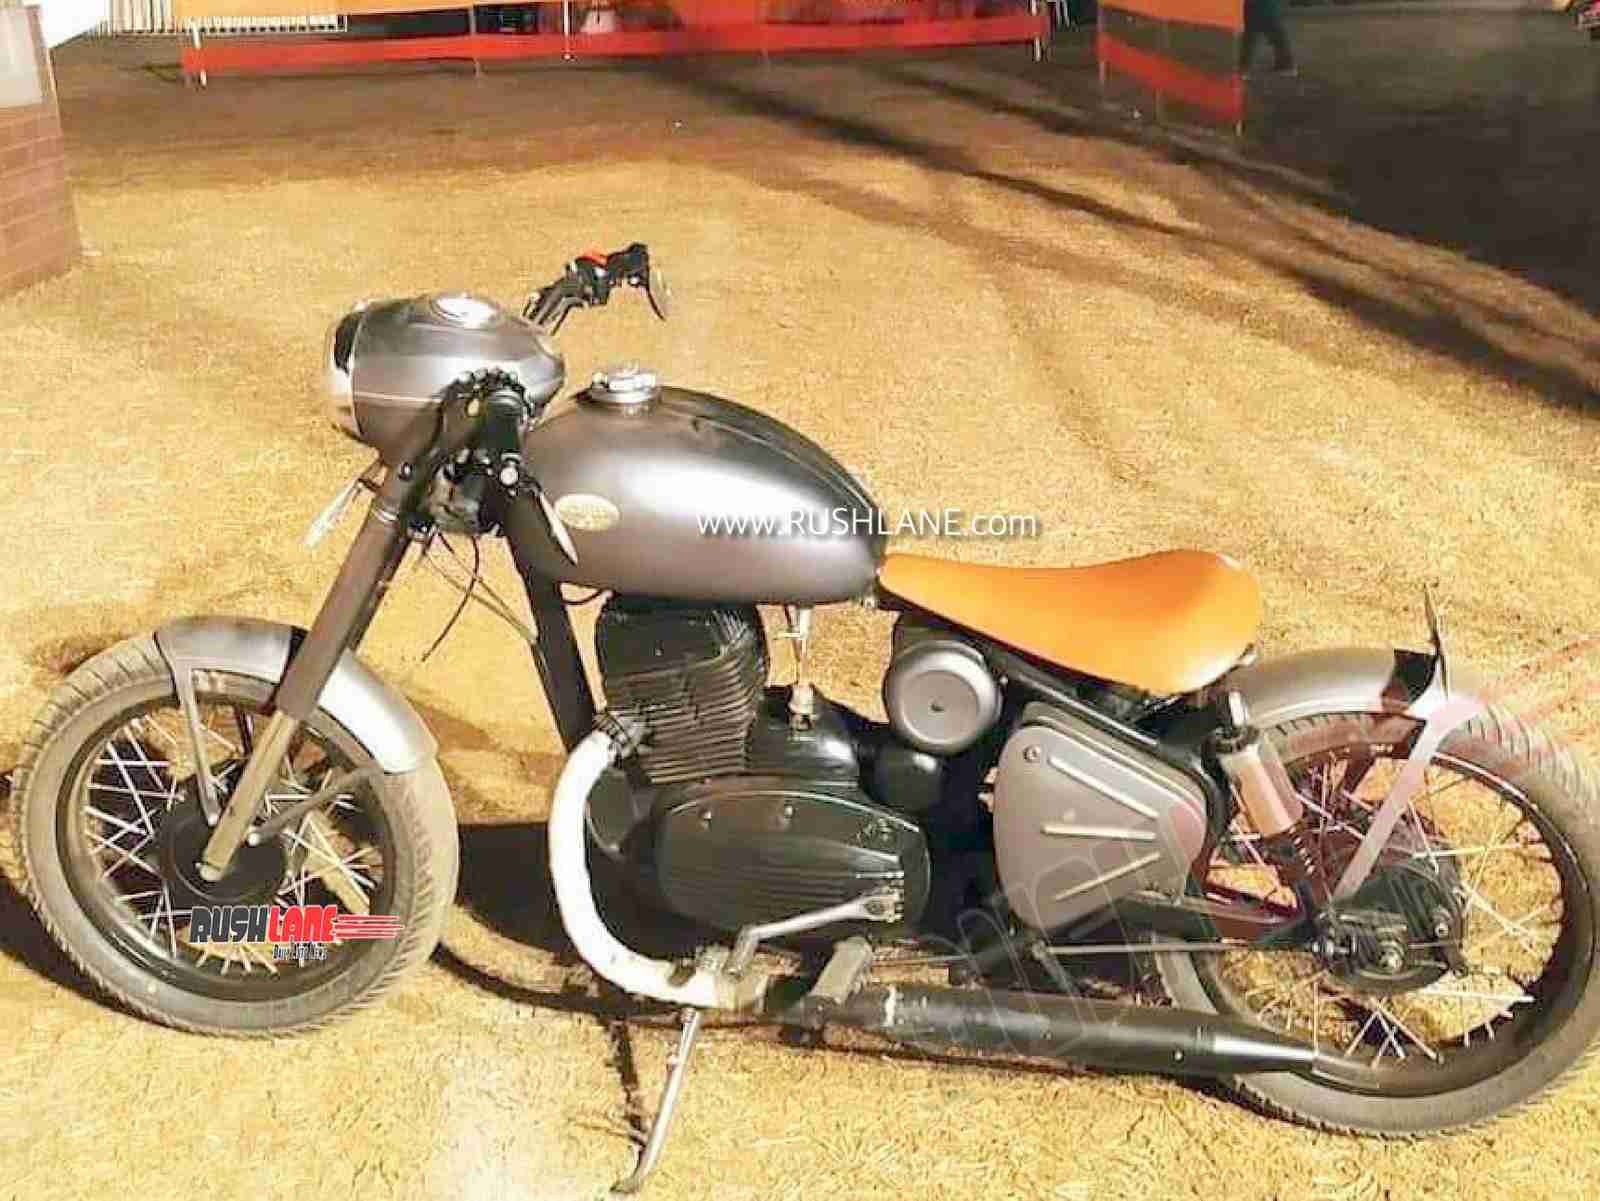 Yezdi Classic 250 Bike Price In India